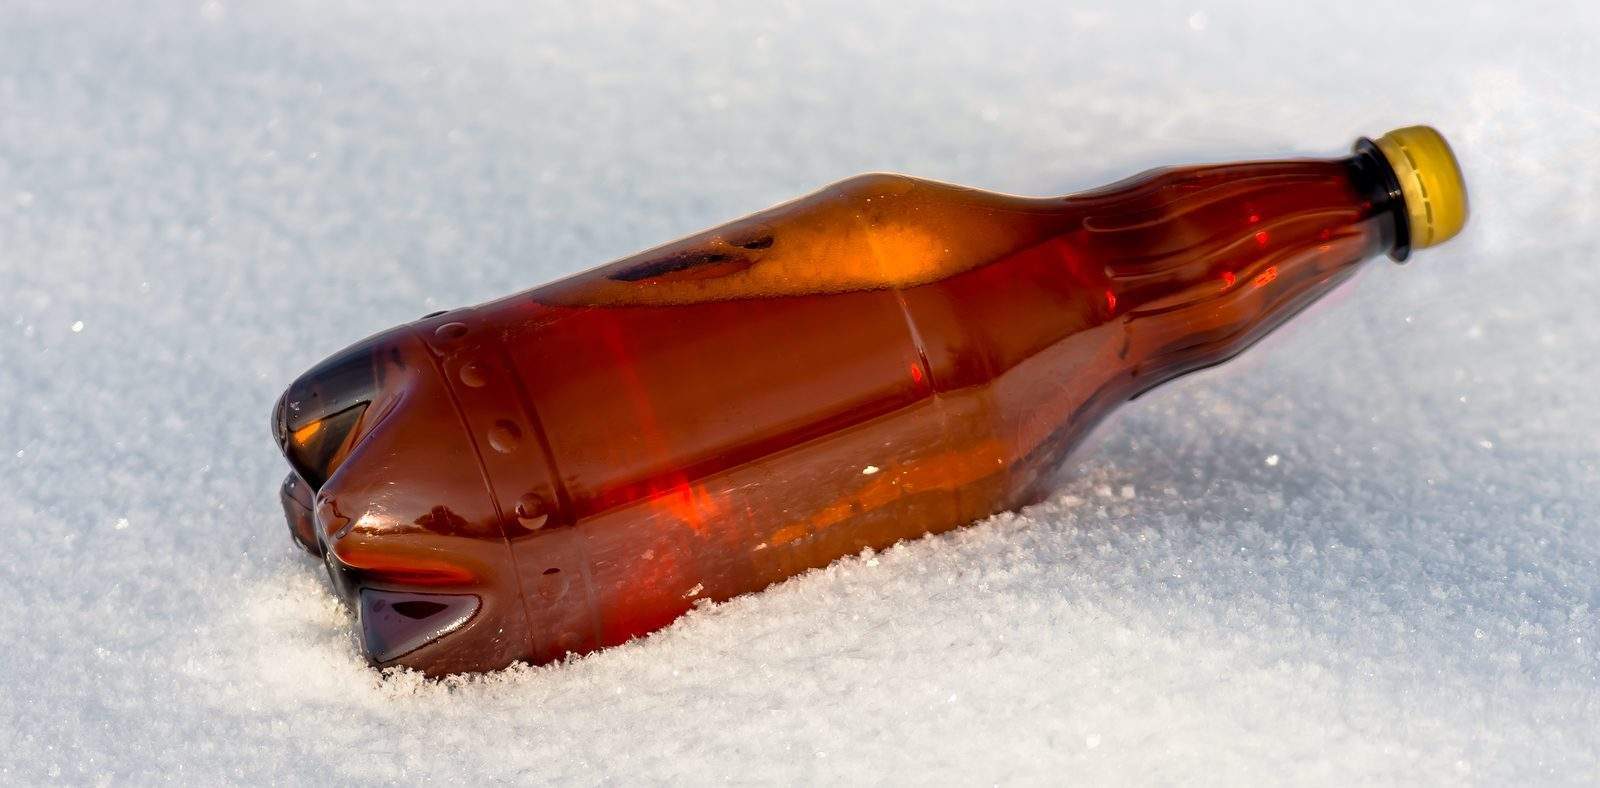 Beer In Plastic Bottles On Snow